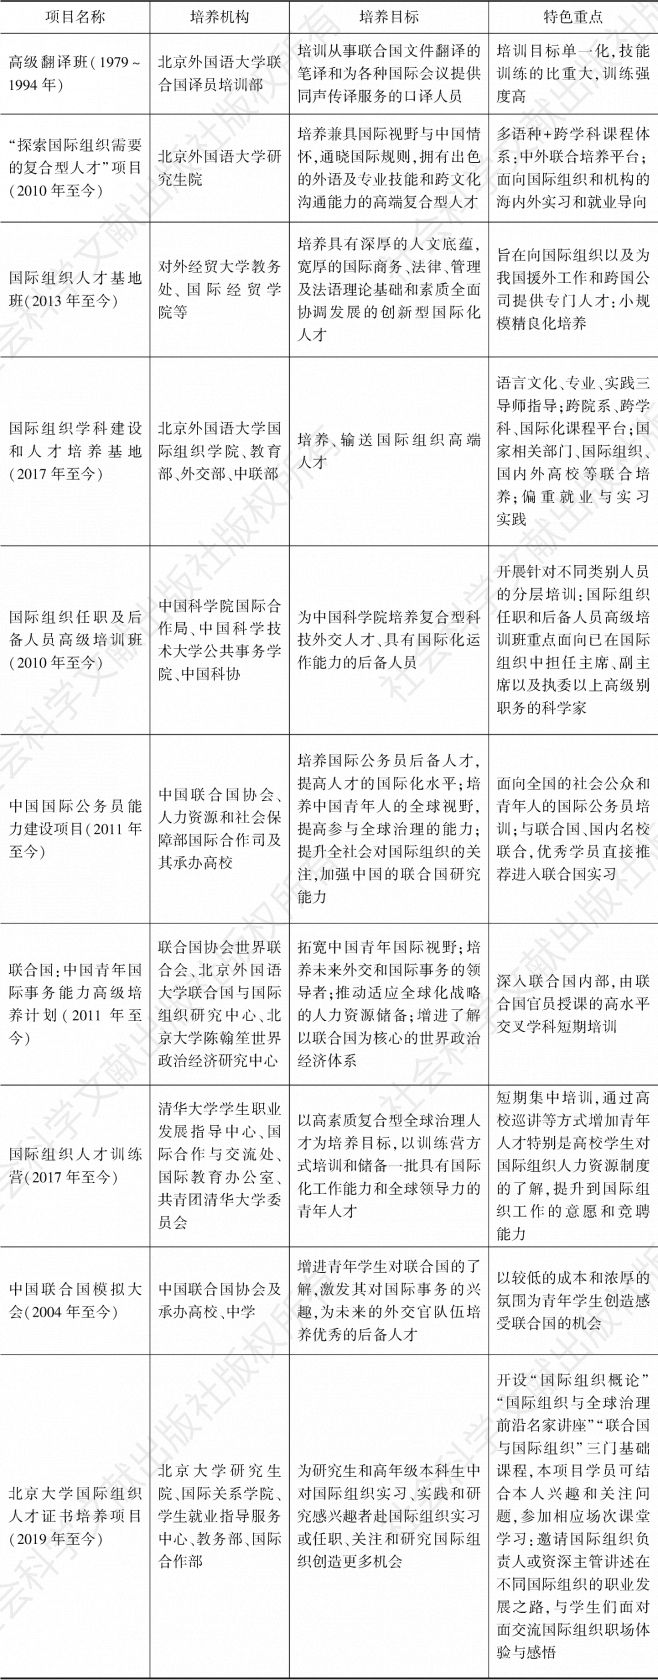 表1 北京市较具代表性的国际组织人才培养项目